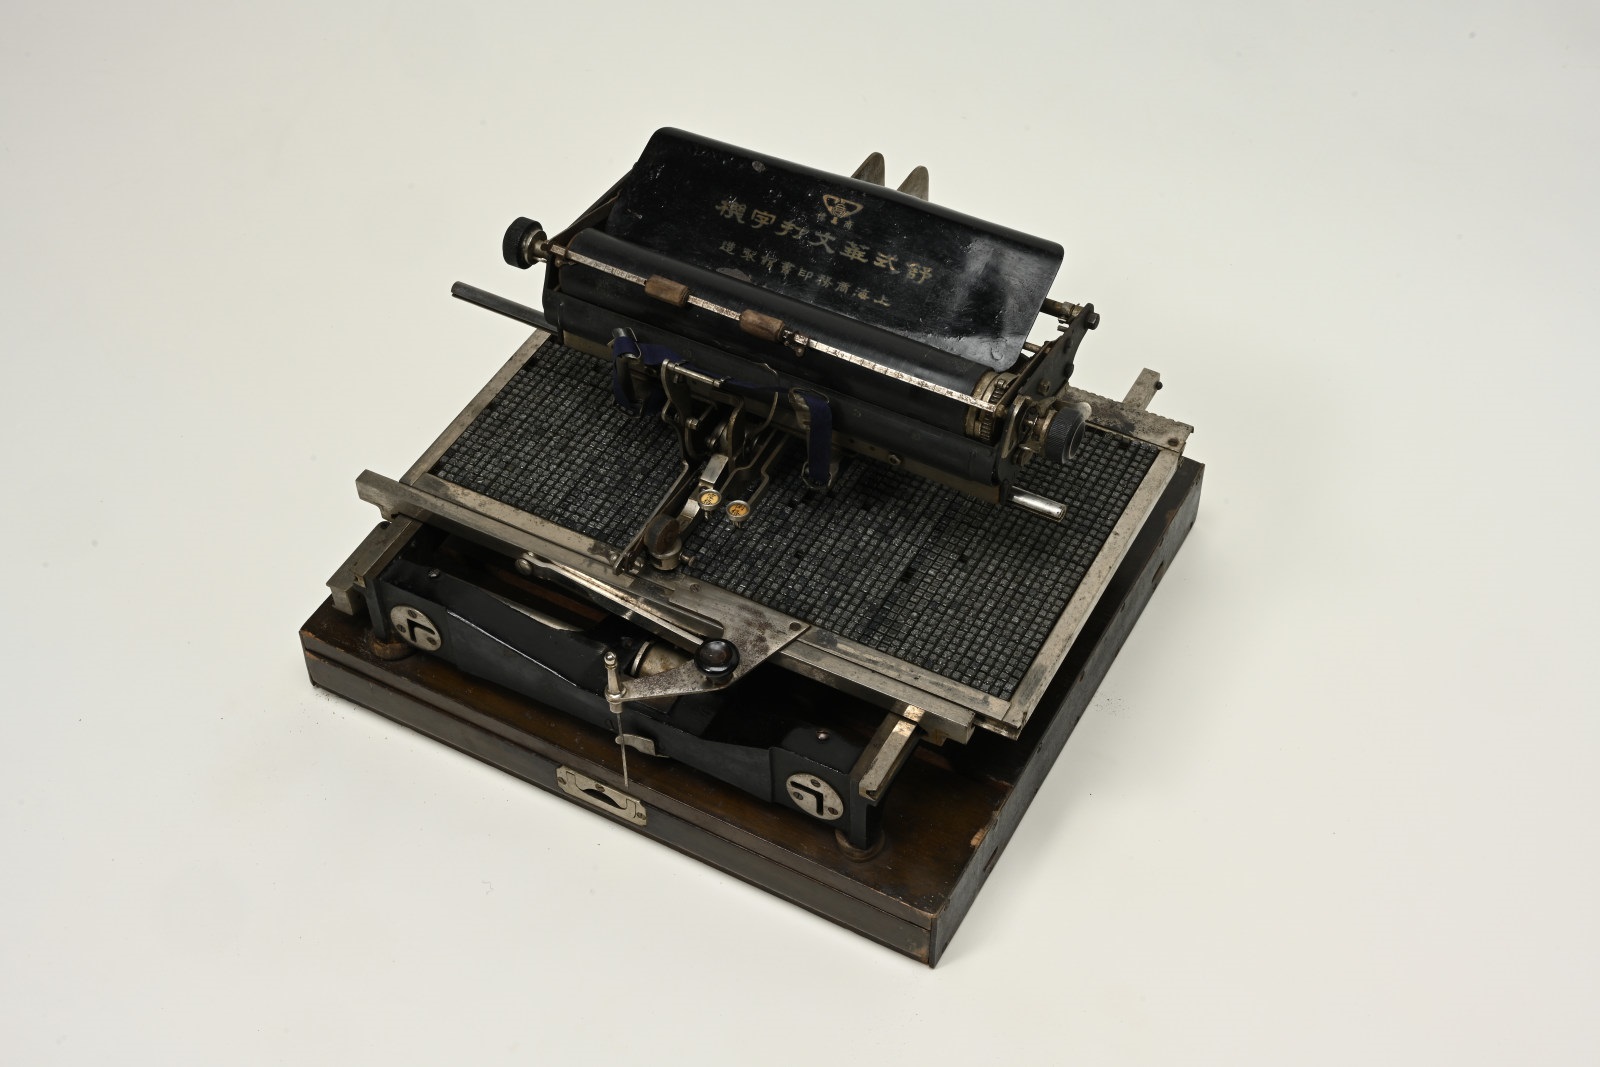 Shu-style Chinese typewriter